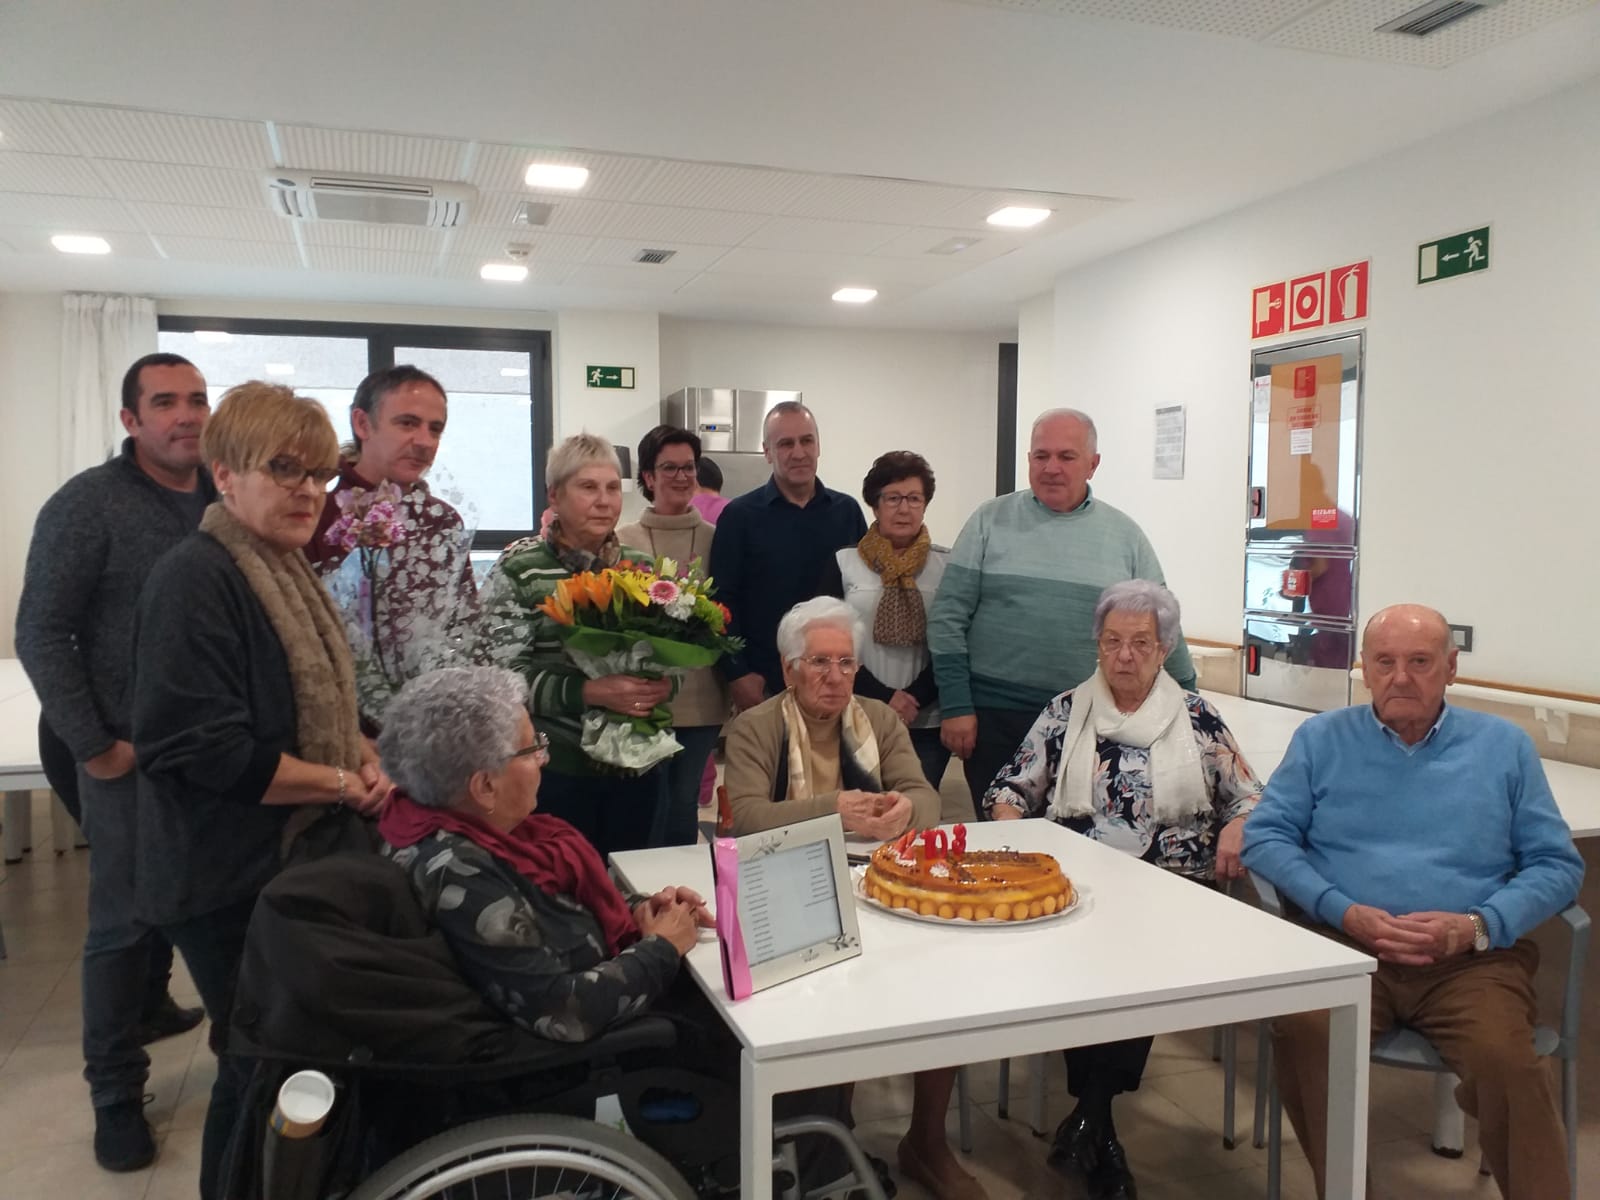 Residencia de ancianos. Residencia para mayores y tercera edad en Bilbao Bizkaia y Vitoria Gasteiz Araba